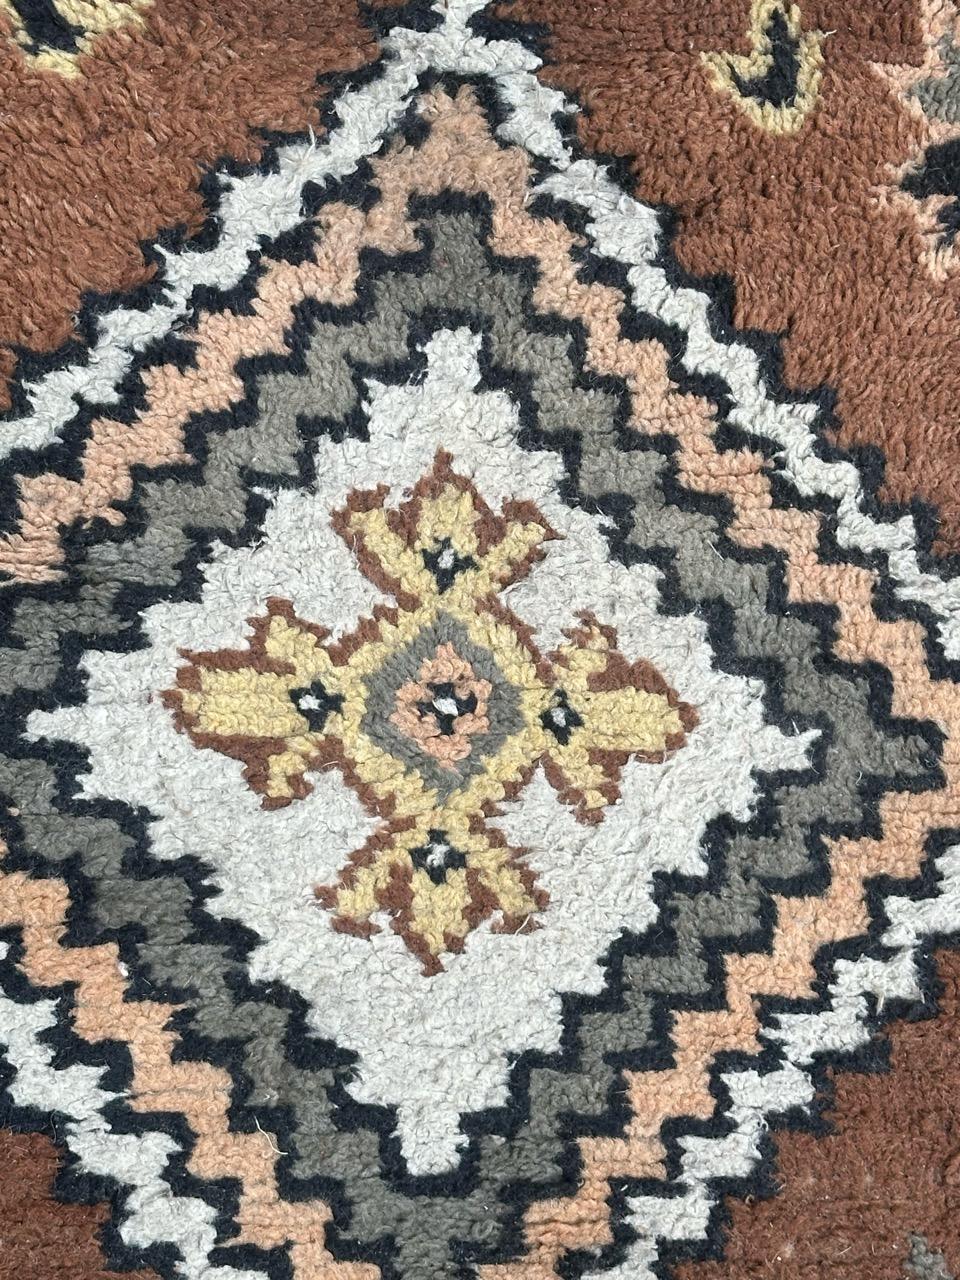 Hübscher kleiner marokkanischer Stammesteppich aus der Mitte des Jahrhunderts mit geometrischem Muster und schönen Farben in Braun, Rosa, Gelb, Grau, Schwarz und Weiß, komplett handgeknüpft mit Wolle auf Baumwollbasis.

✨✨✨
